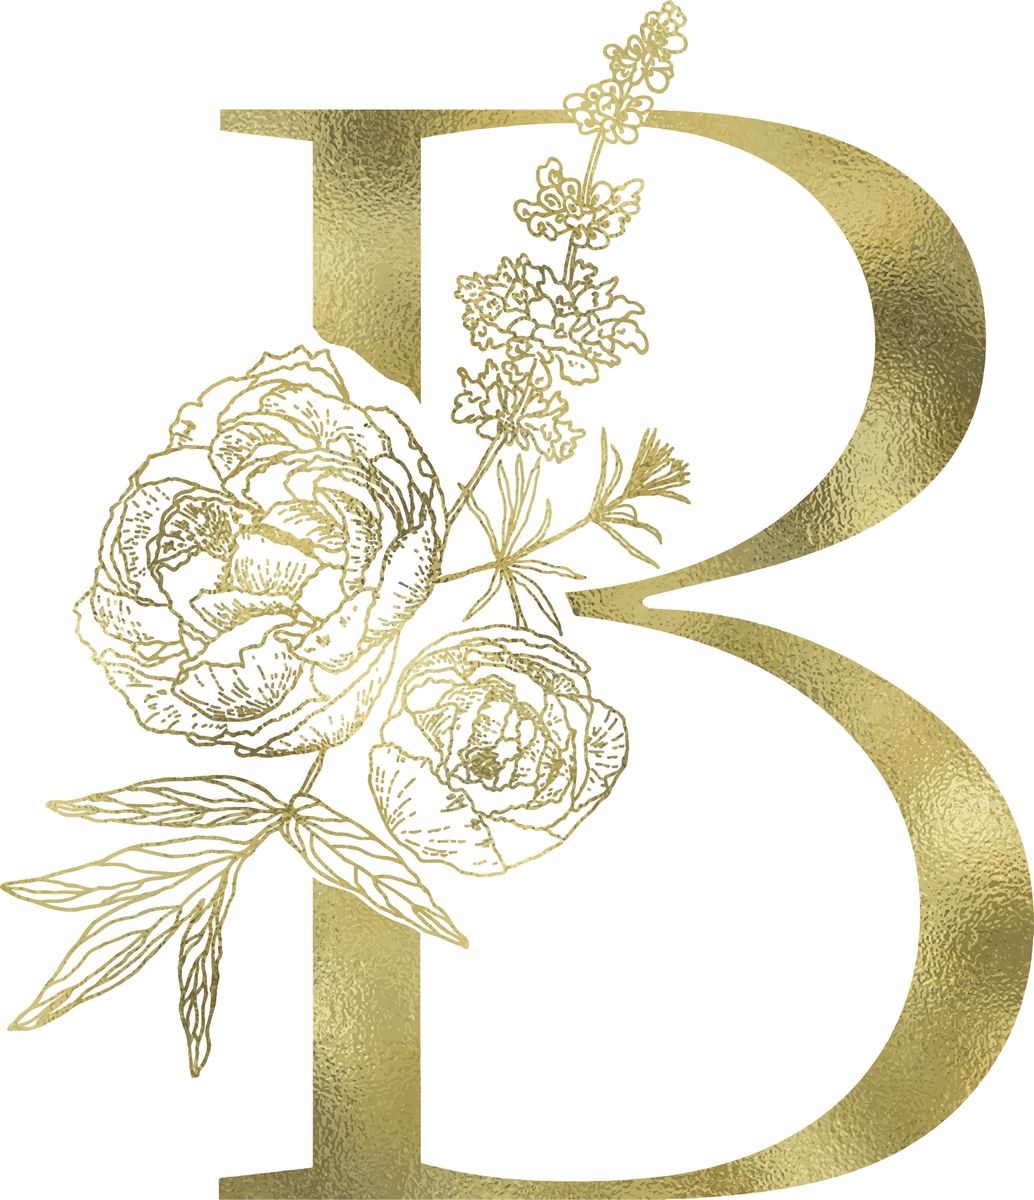 金色花朵字母b模板下载 素材id 书画文字 设计素材 第一素材网1sucai Com